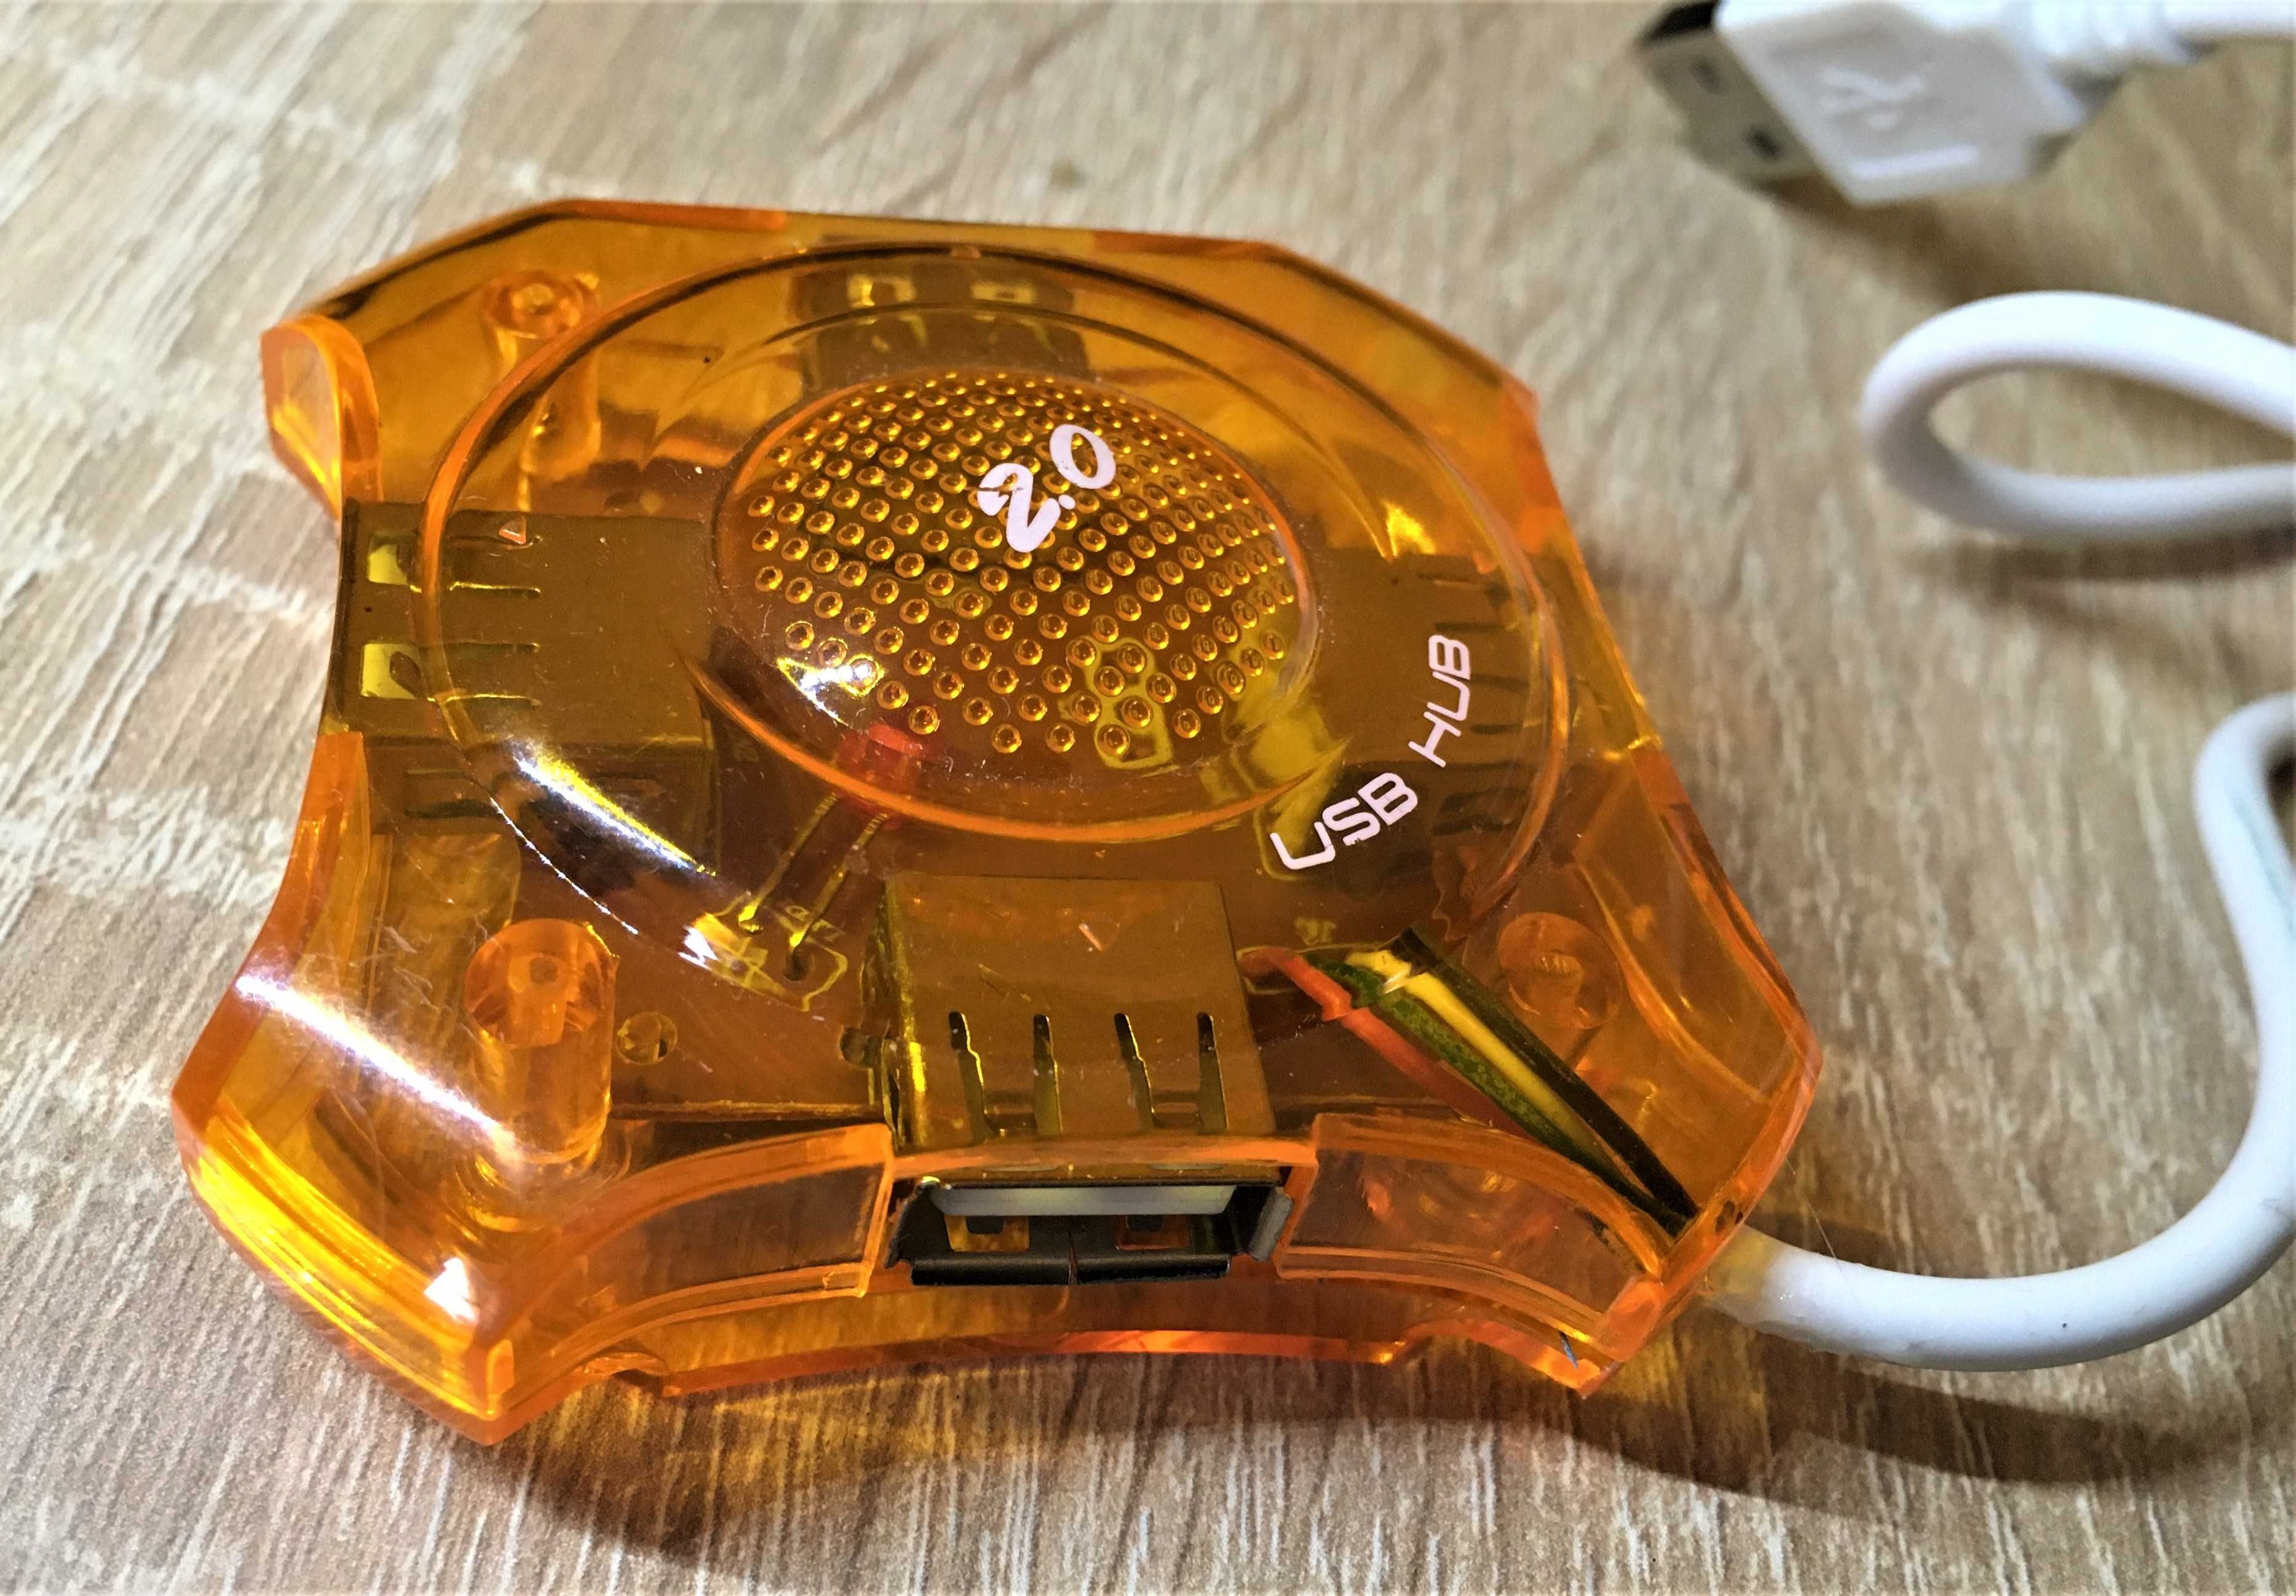 hub USB 2.0 alb, portocaliu 4 porturi usb, mini hub, hi speed